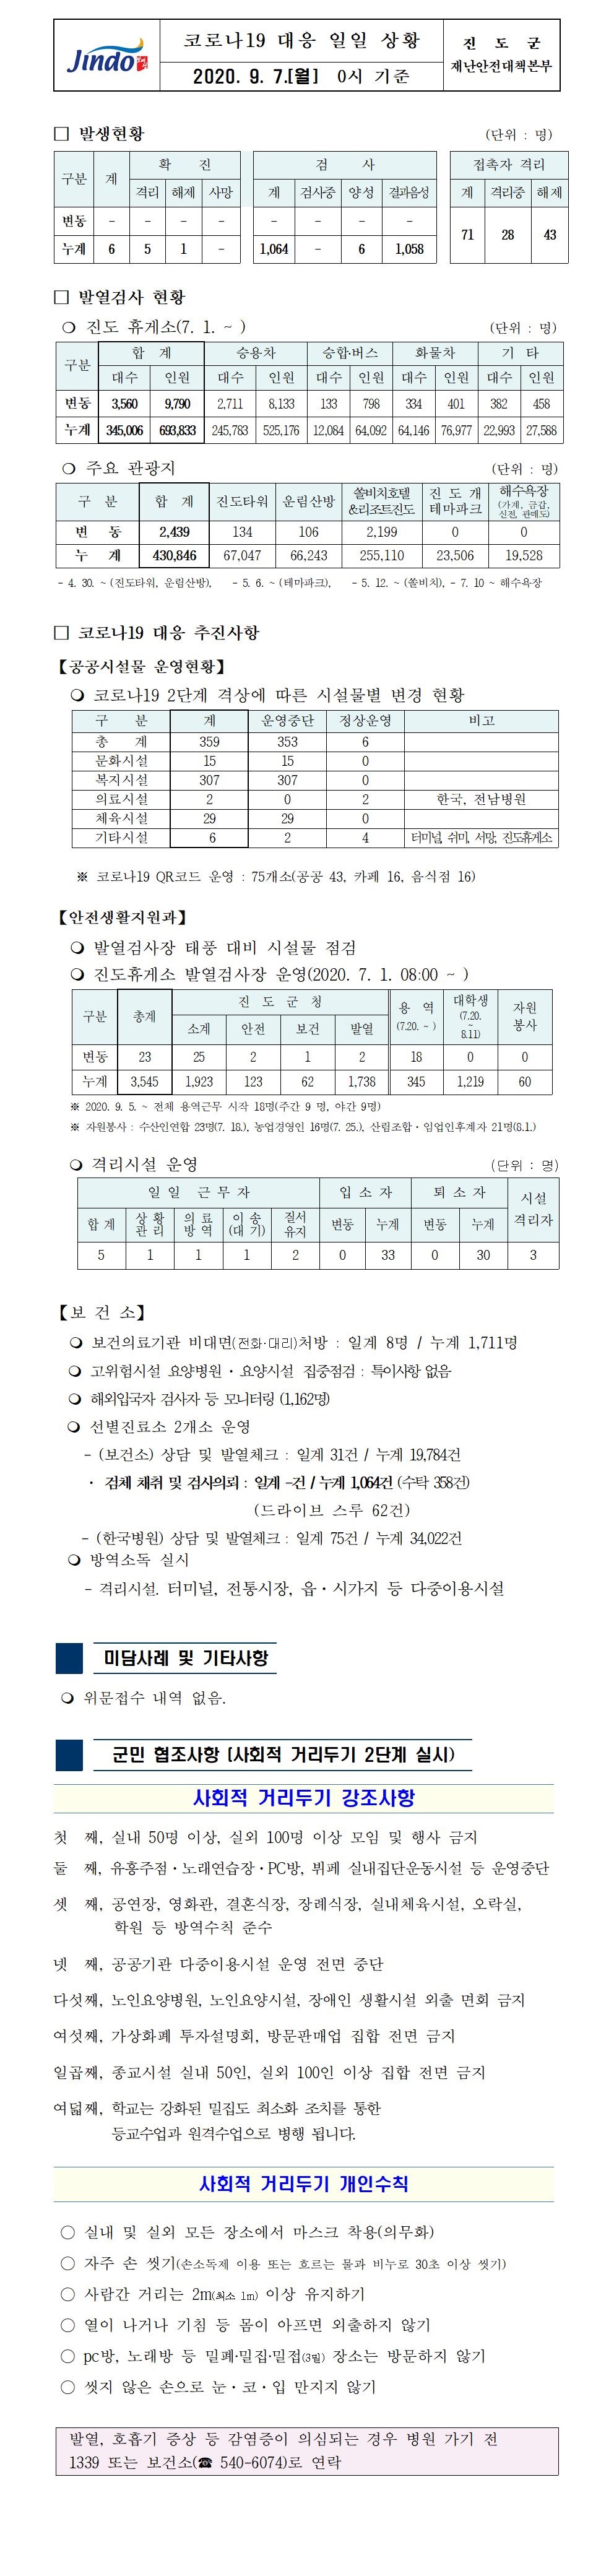 코로나19대응 일일 상황 보고(9월7일 0시 기준) 첨부#1